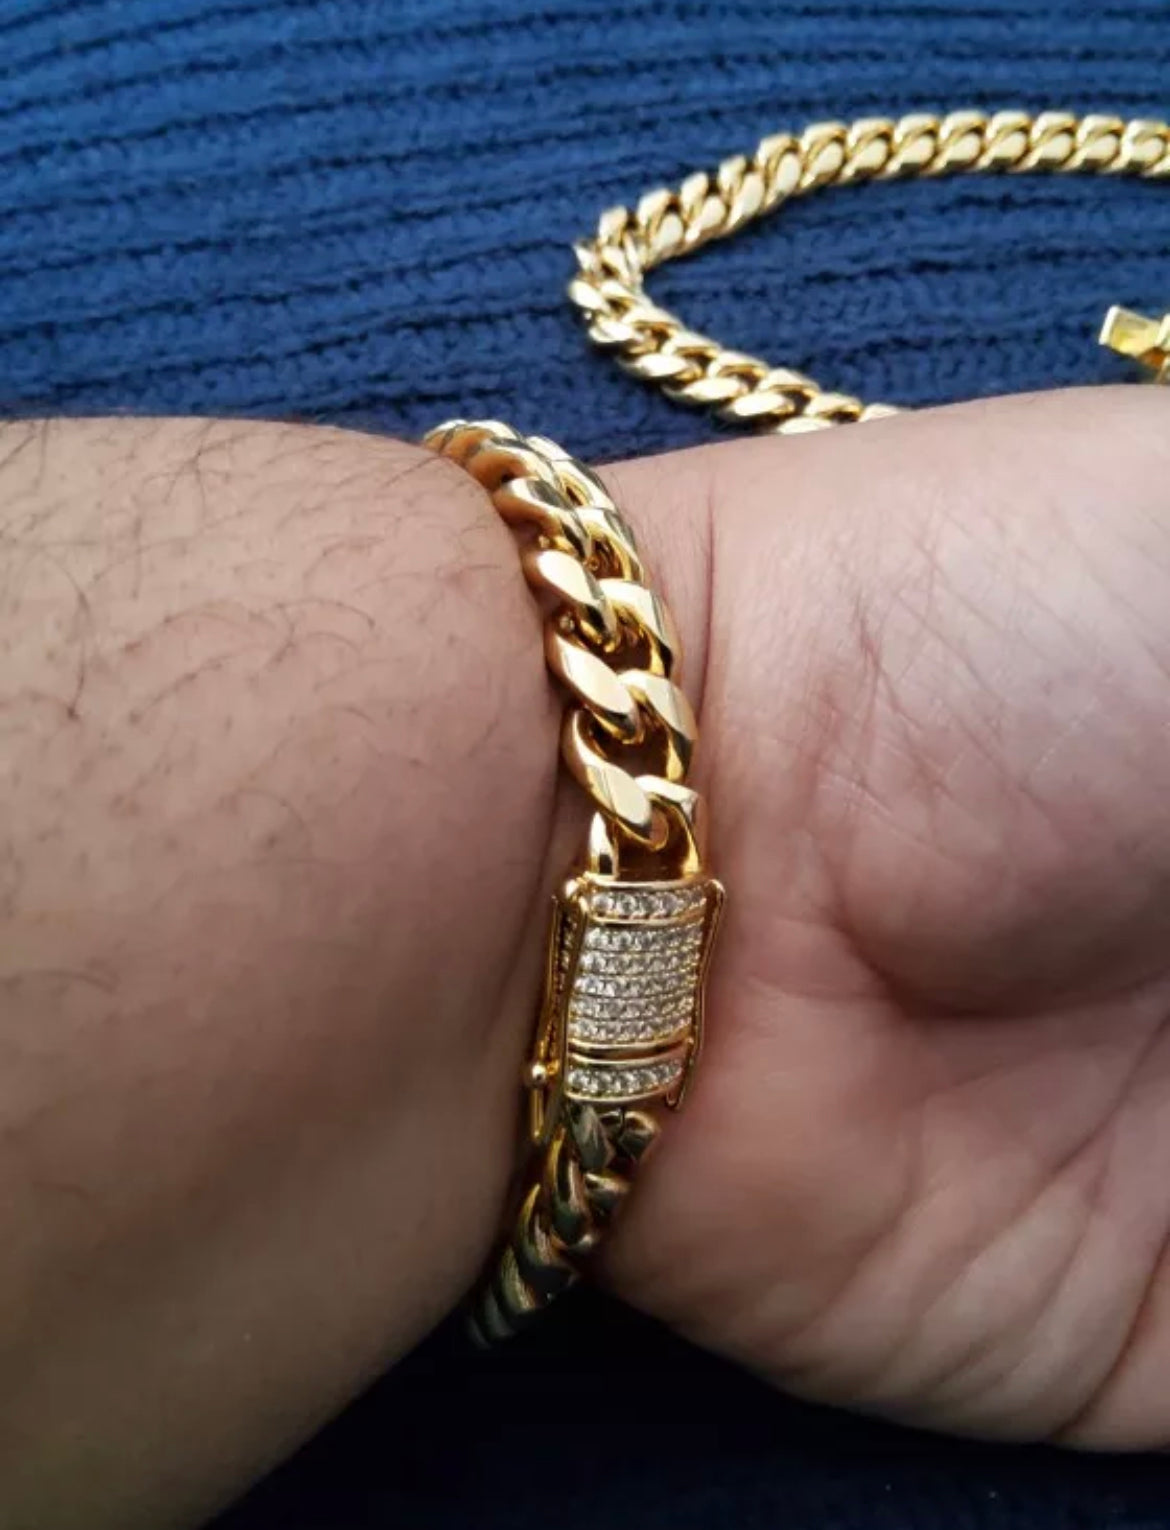 Cuban Link Pave Clasp Bracelet